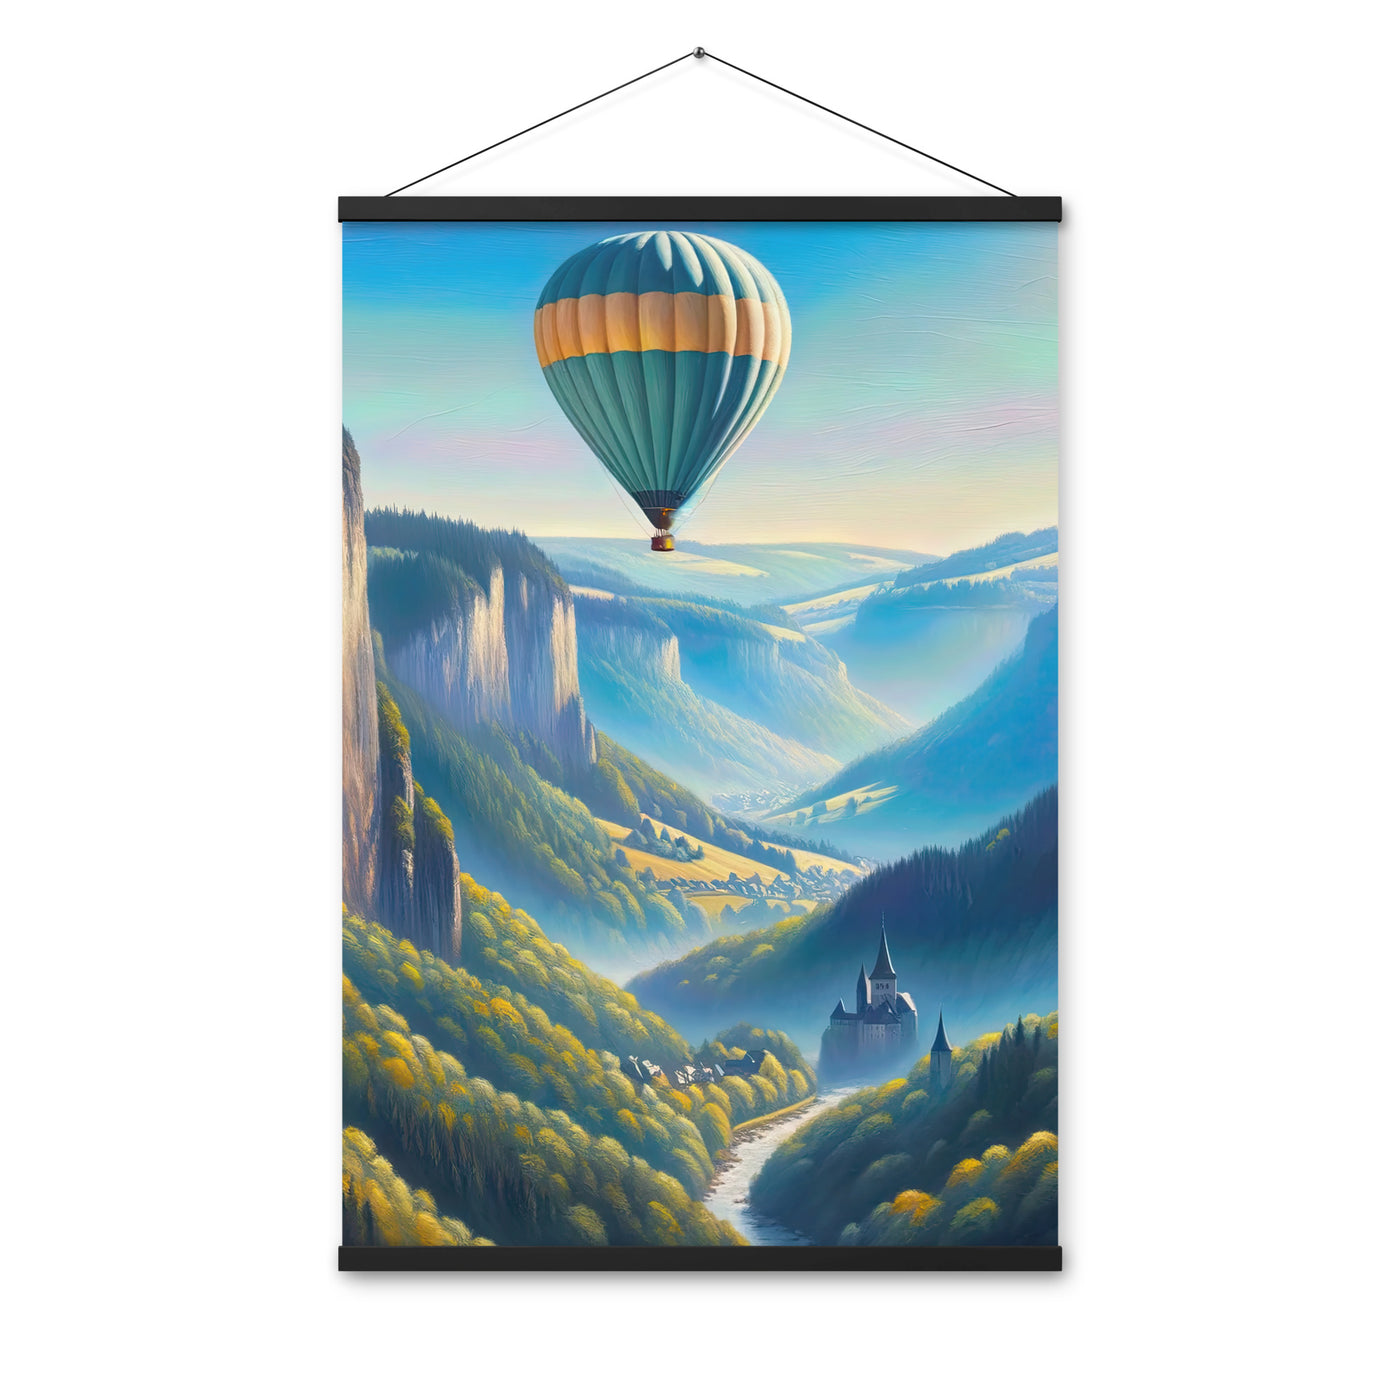 Ölgemälde einer ruhigen Szene in Luxemburg mit Heißluftballon und blauem Himmel - Premium Poster mit Aufhängung berge xxx yyy zzz 61 x 91.4 cm